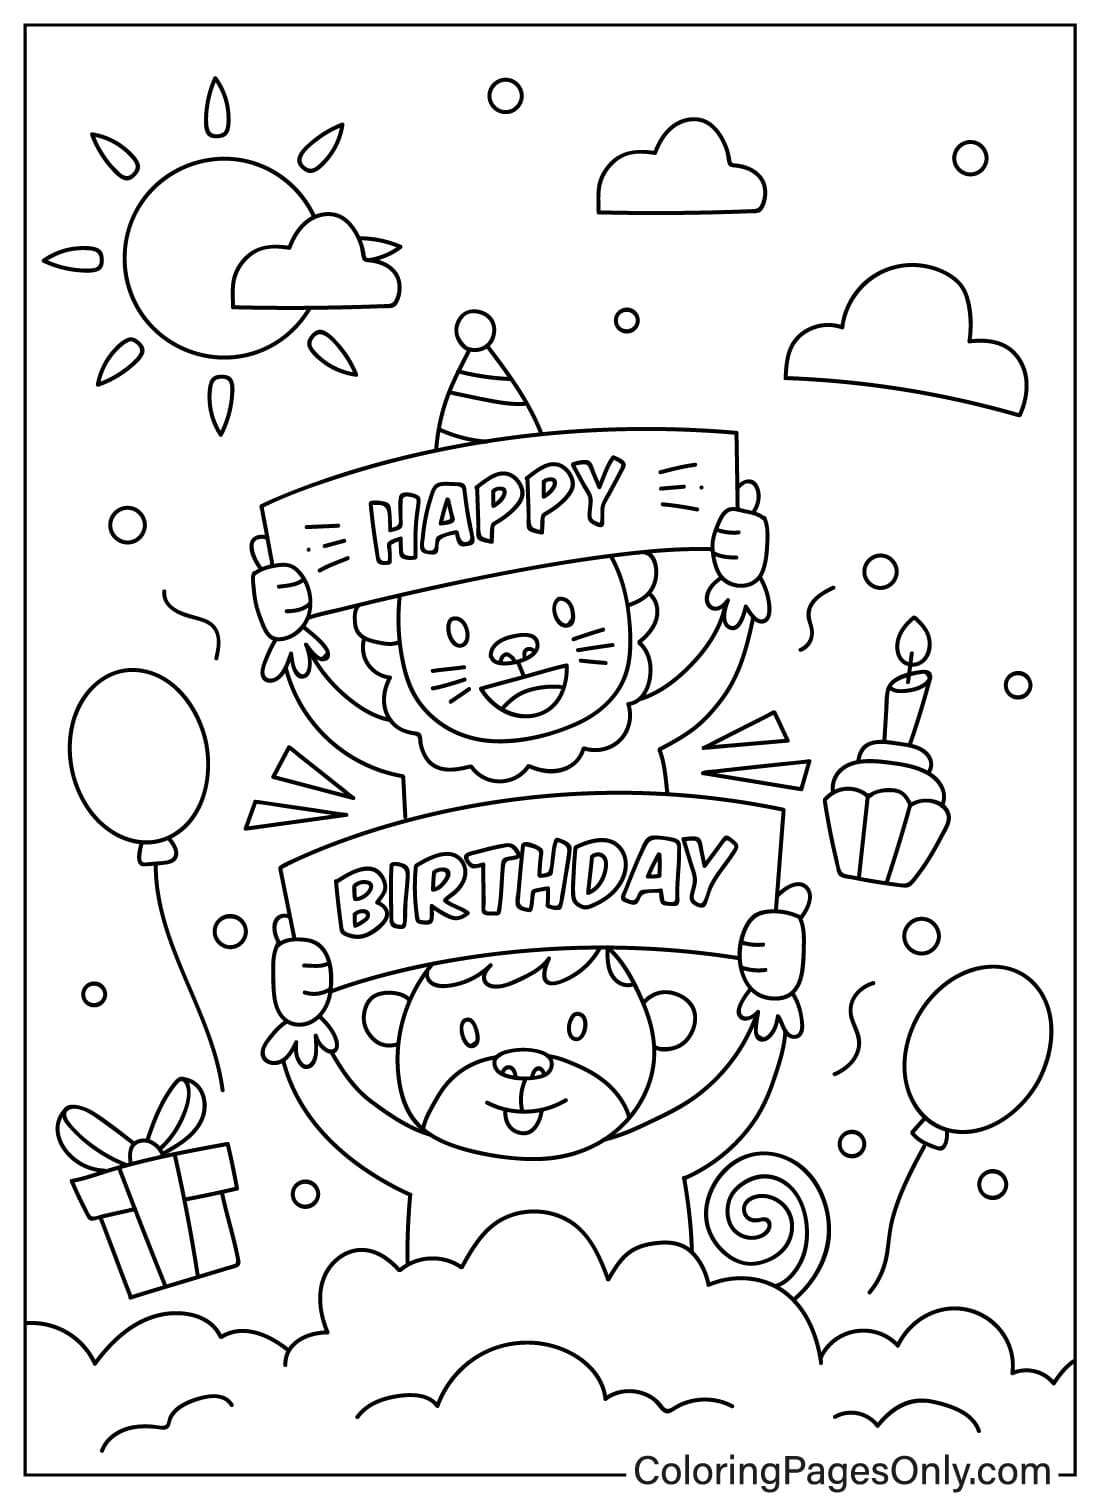 Alles Gute zum Geburtstag-Malvorlagen-Zeichnung